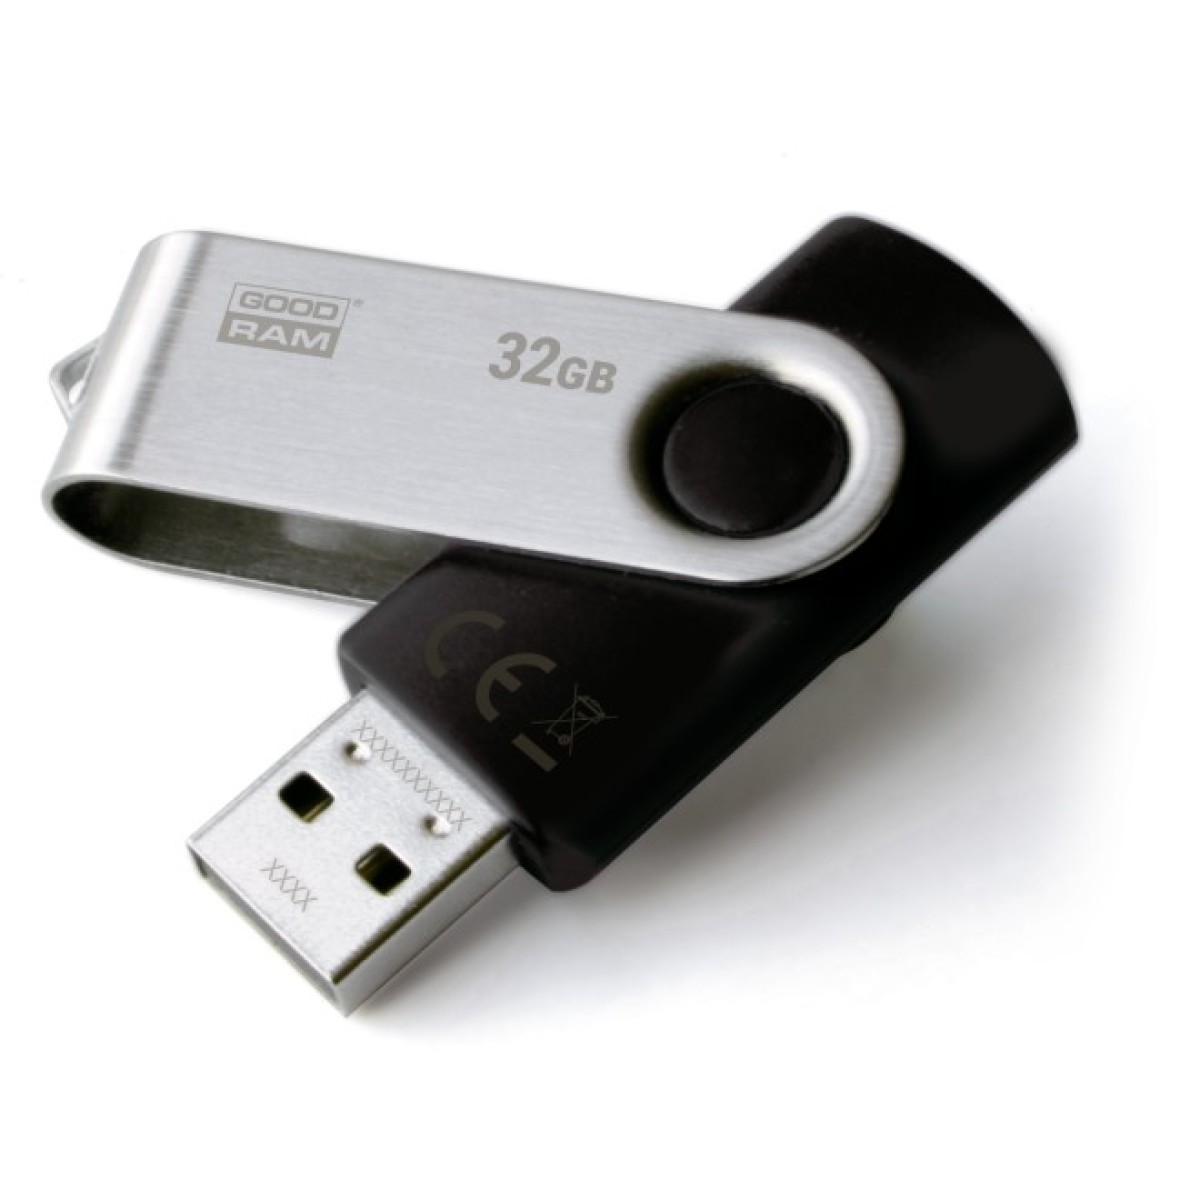 USB флеш накопитель Goodram 32GB UTS2 (Twister) Black USB 2.0 (UTS2-0320K0R11) 256_256.jpg